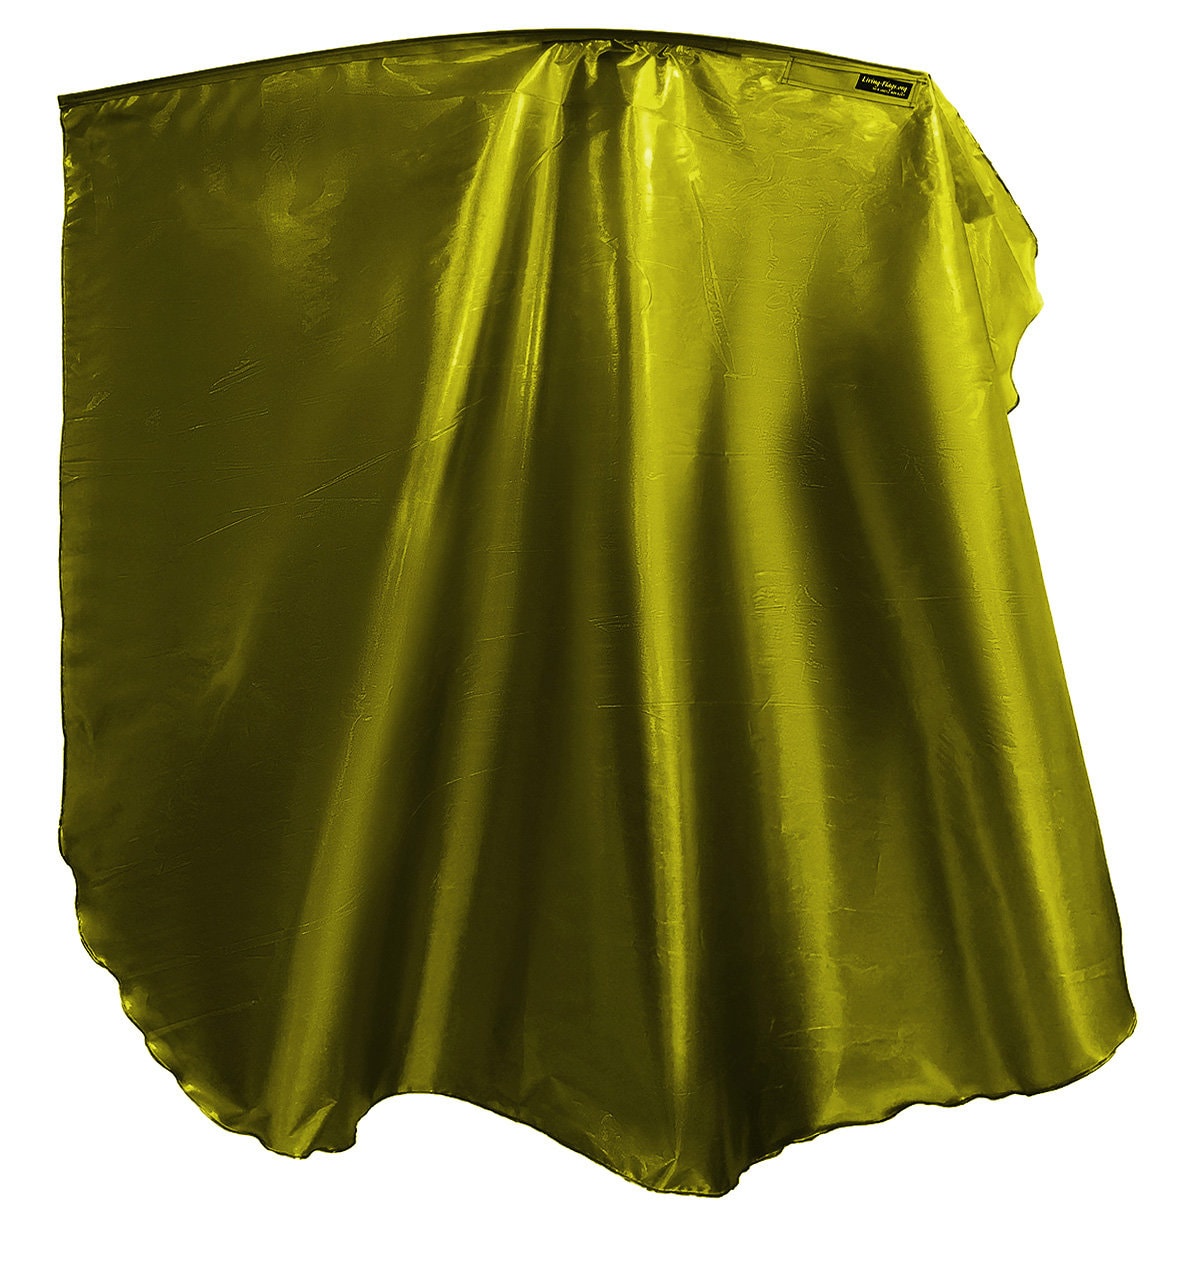 WXLL-Quill - Bandera de ala negra / dorada de metal líquido - Varilla flexible de 40 "